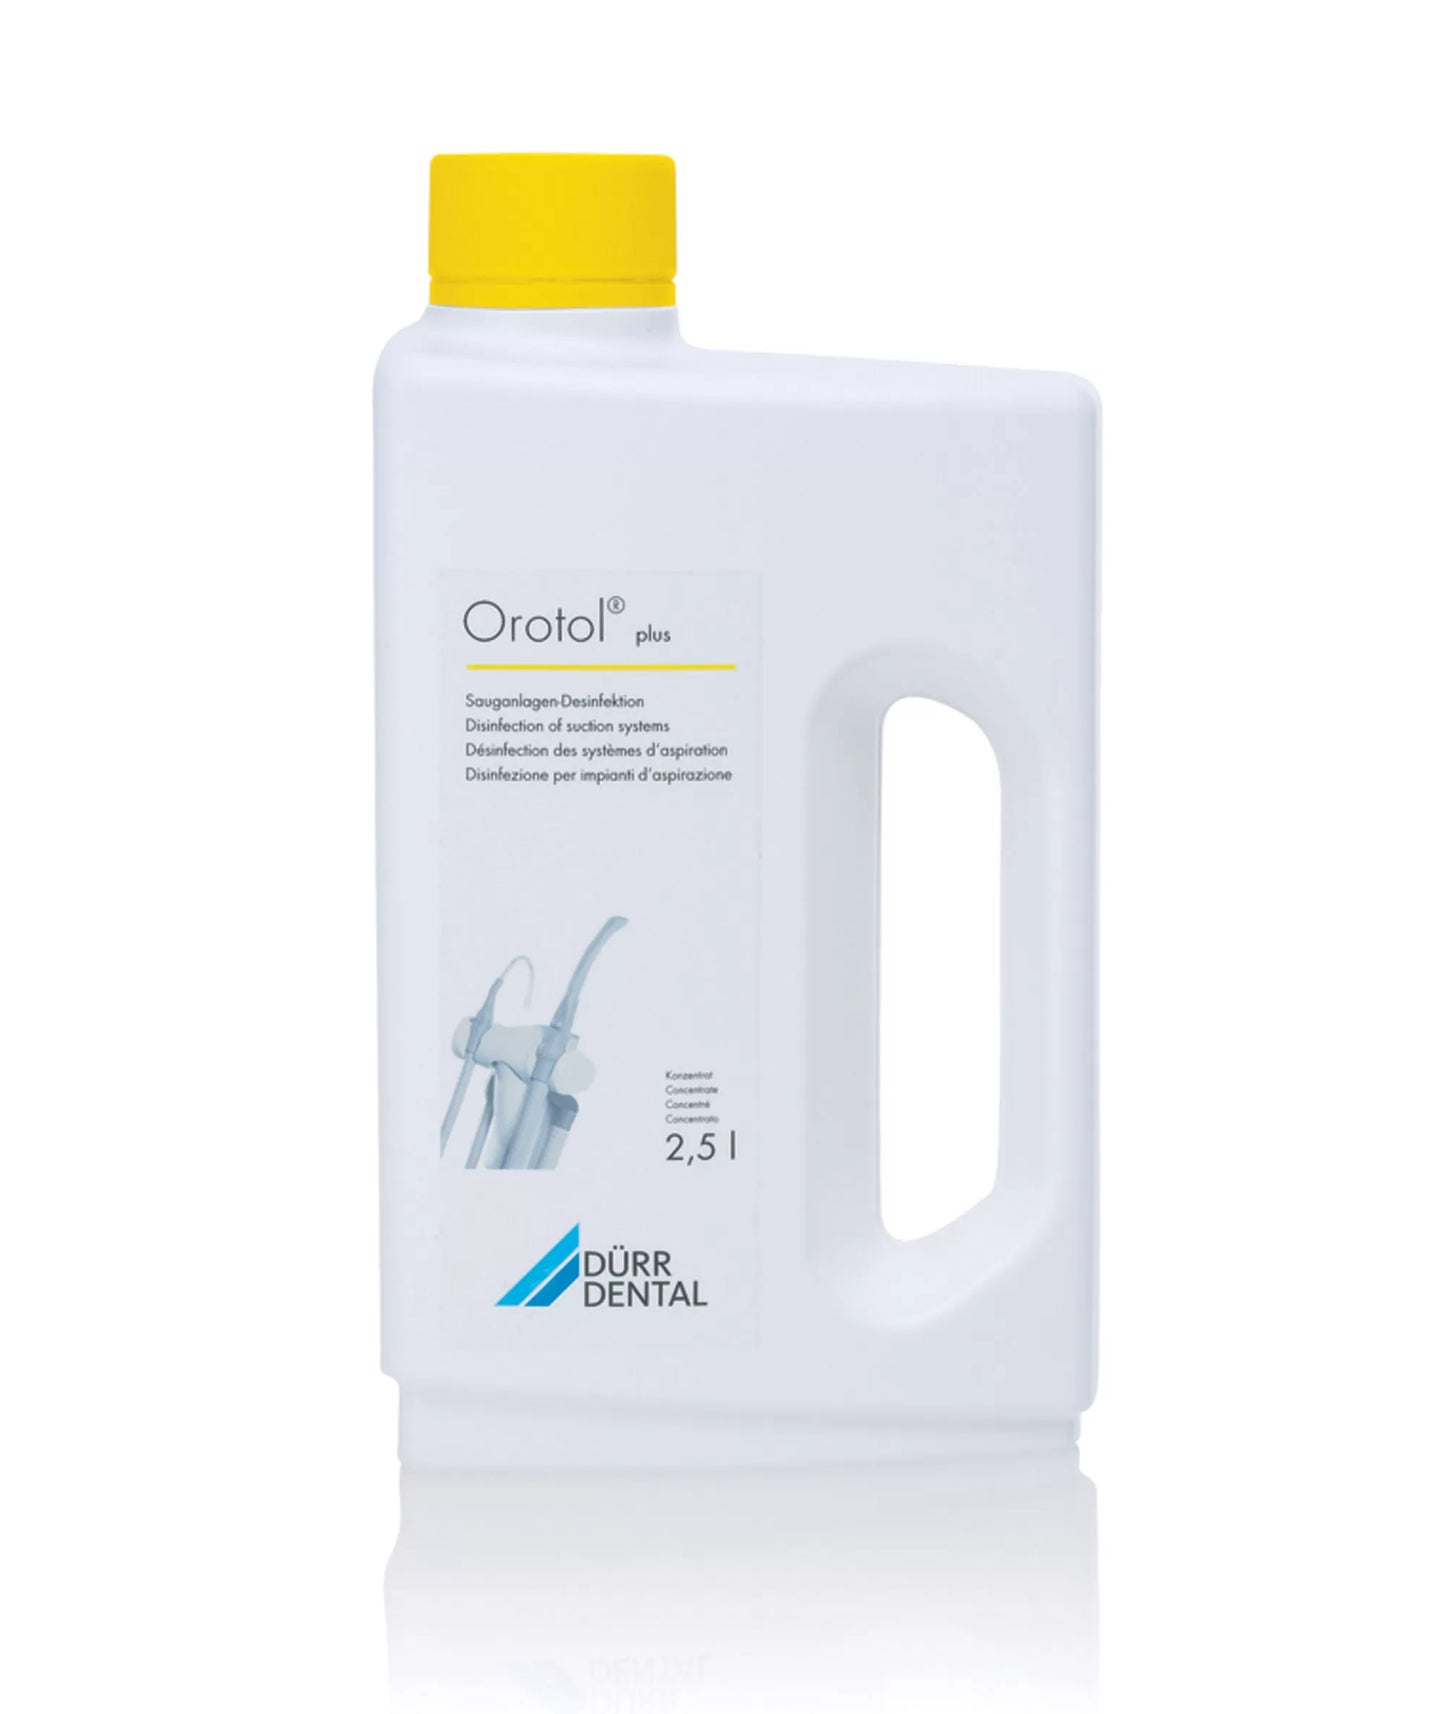 Durr Dental 2.5L Orotol Plus suction unit disinfection